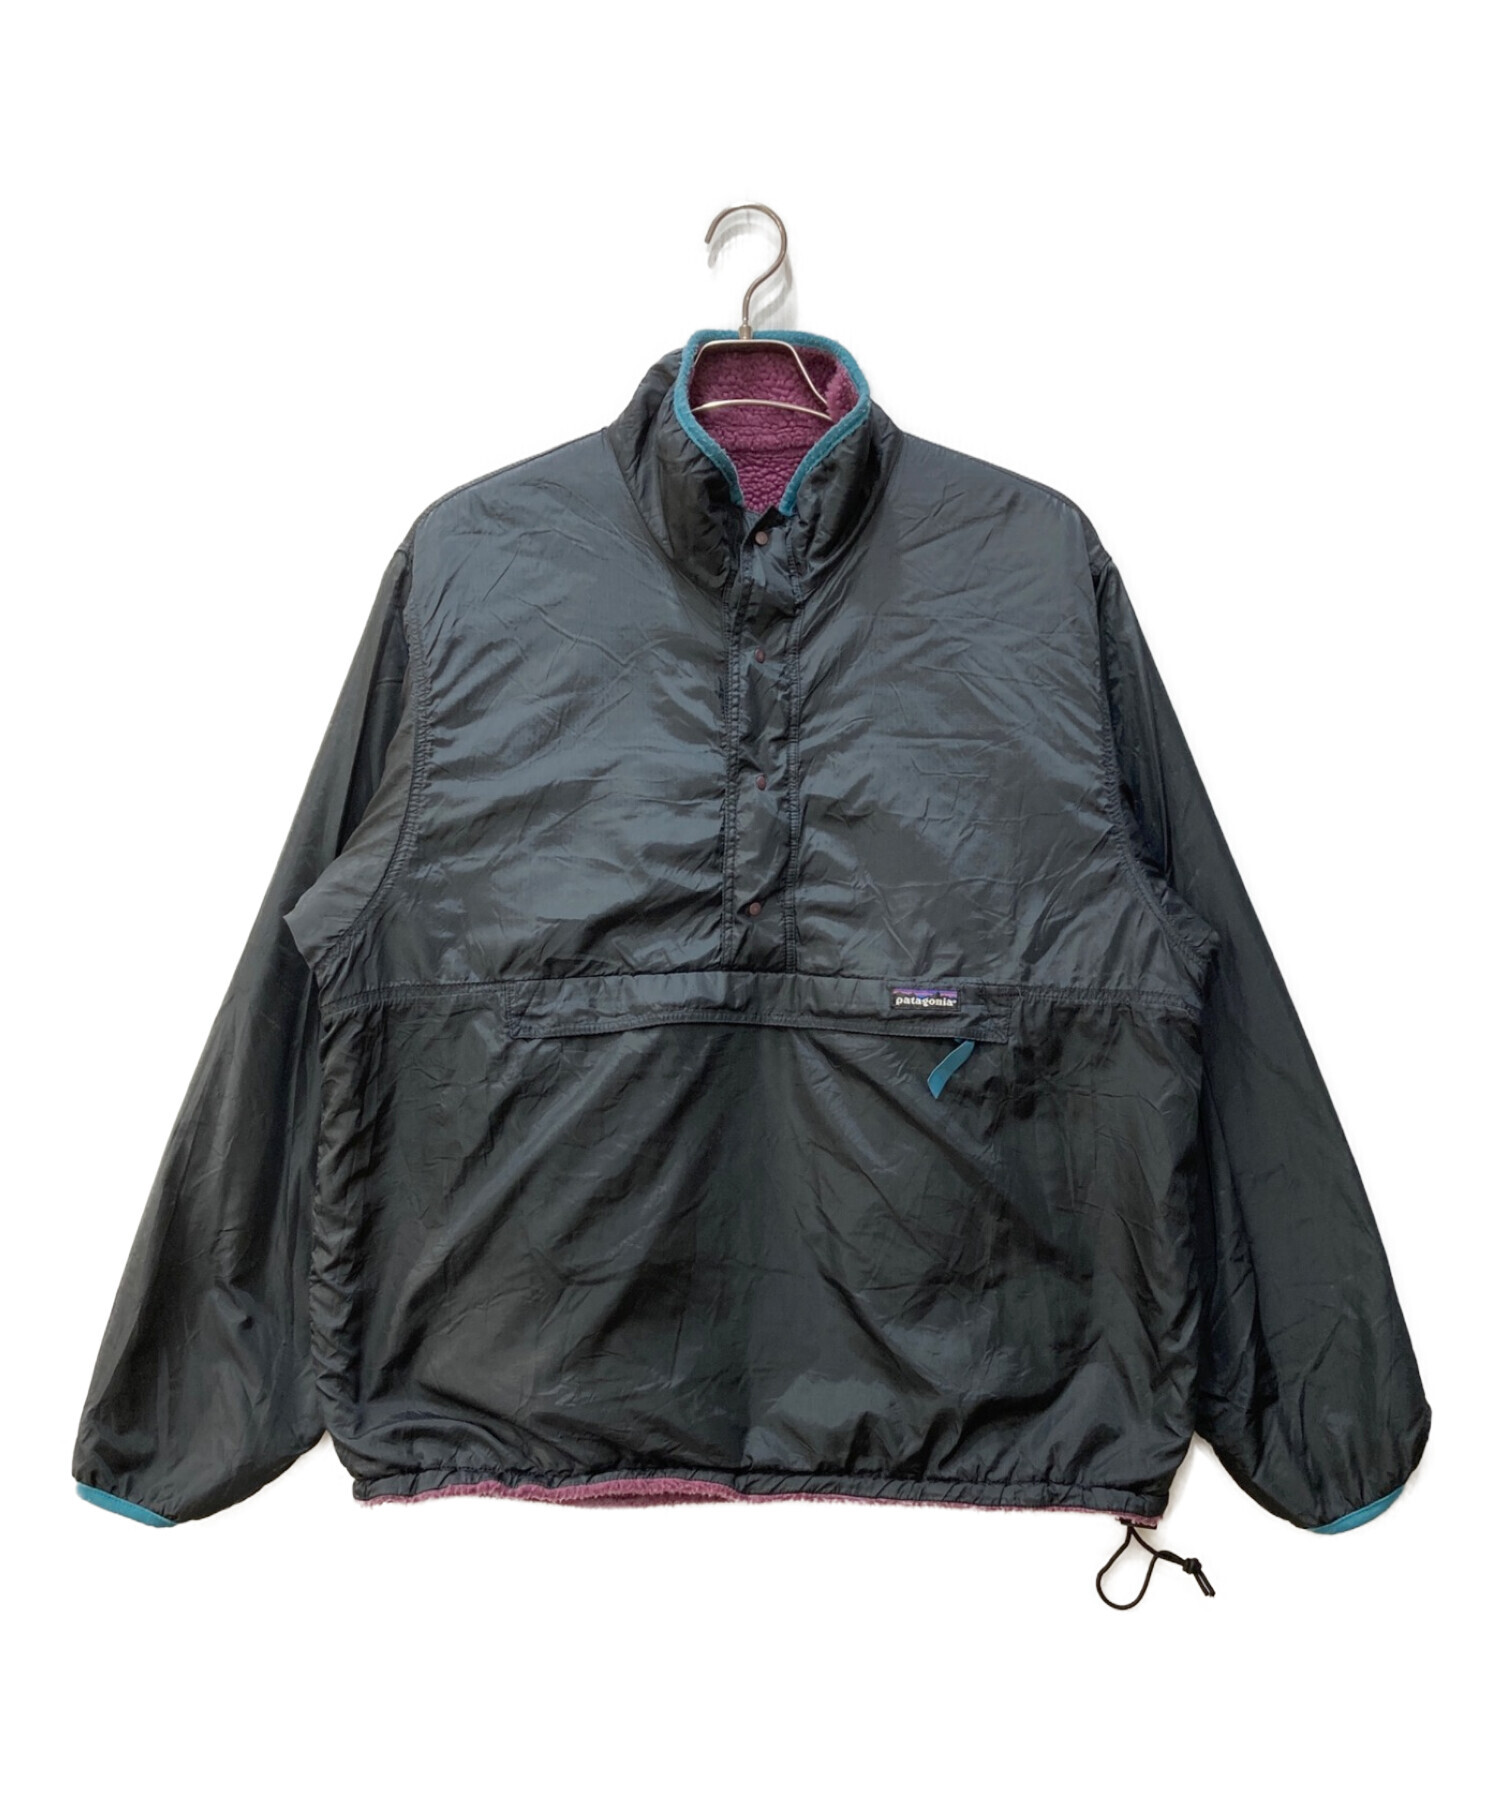 Patagonia (パタゴニア) グリセードジャケット ブラック×パープル サイズ:L